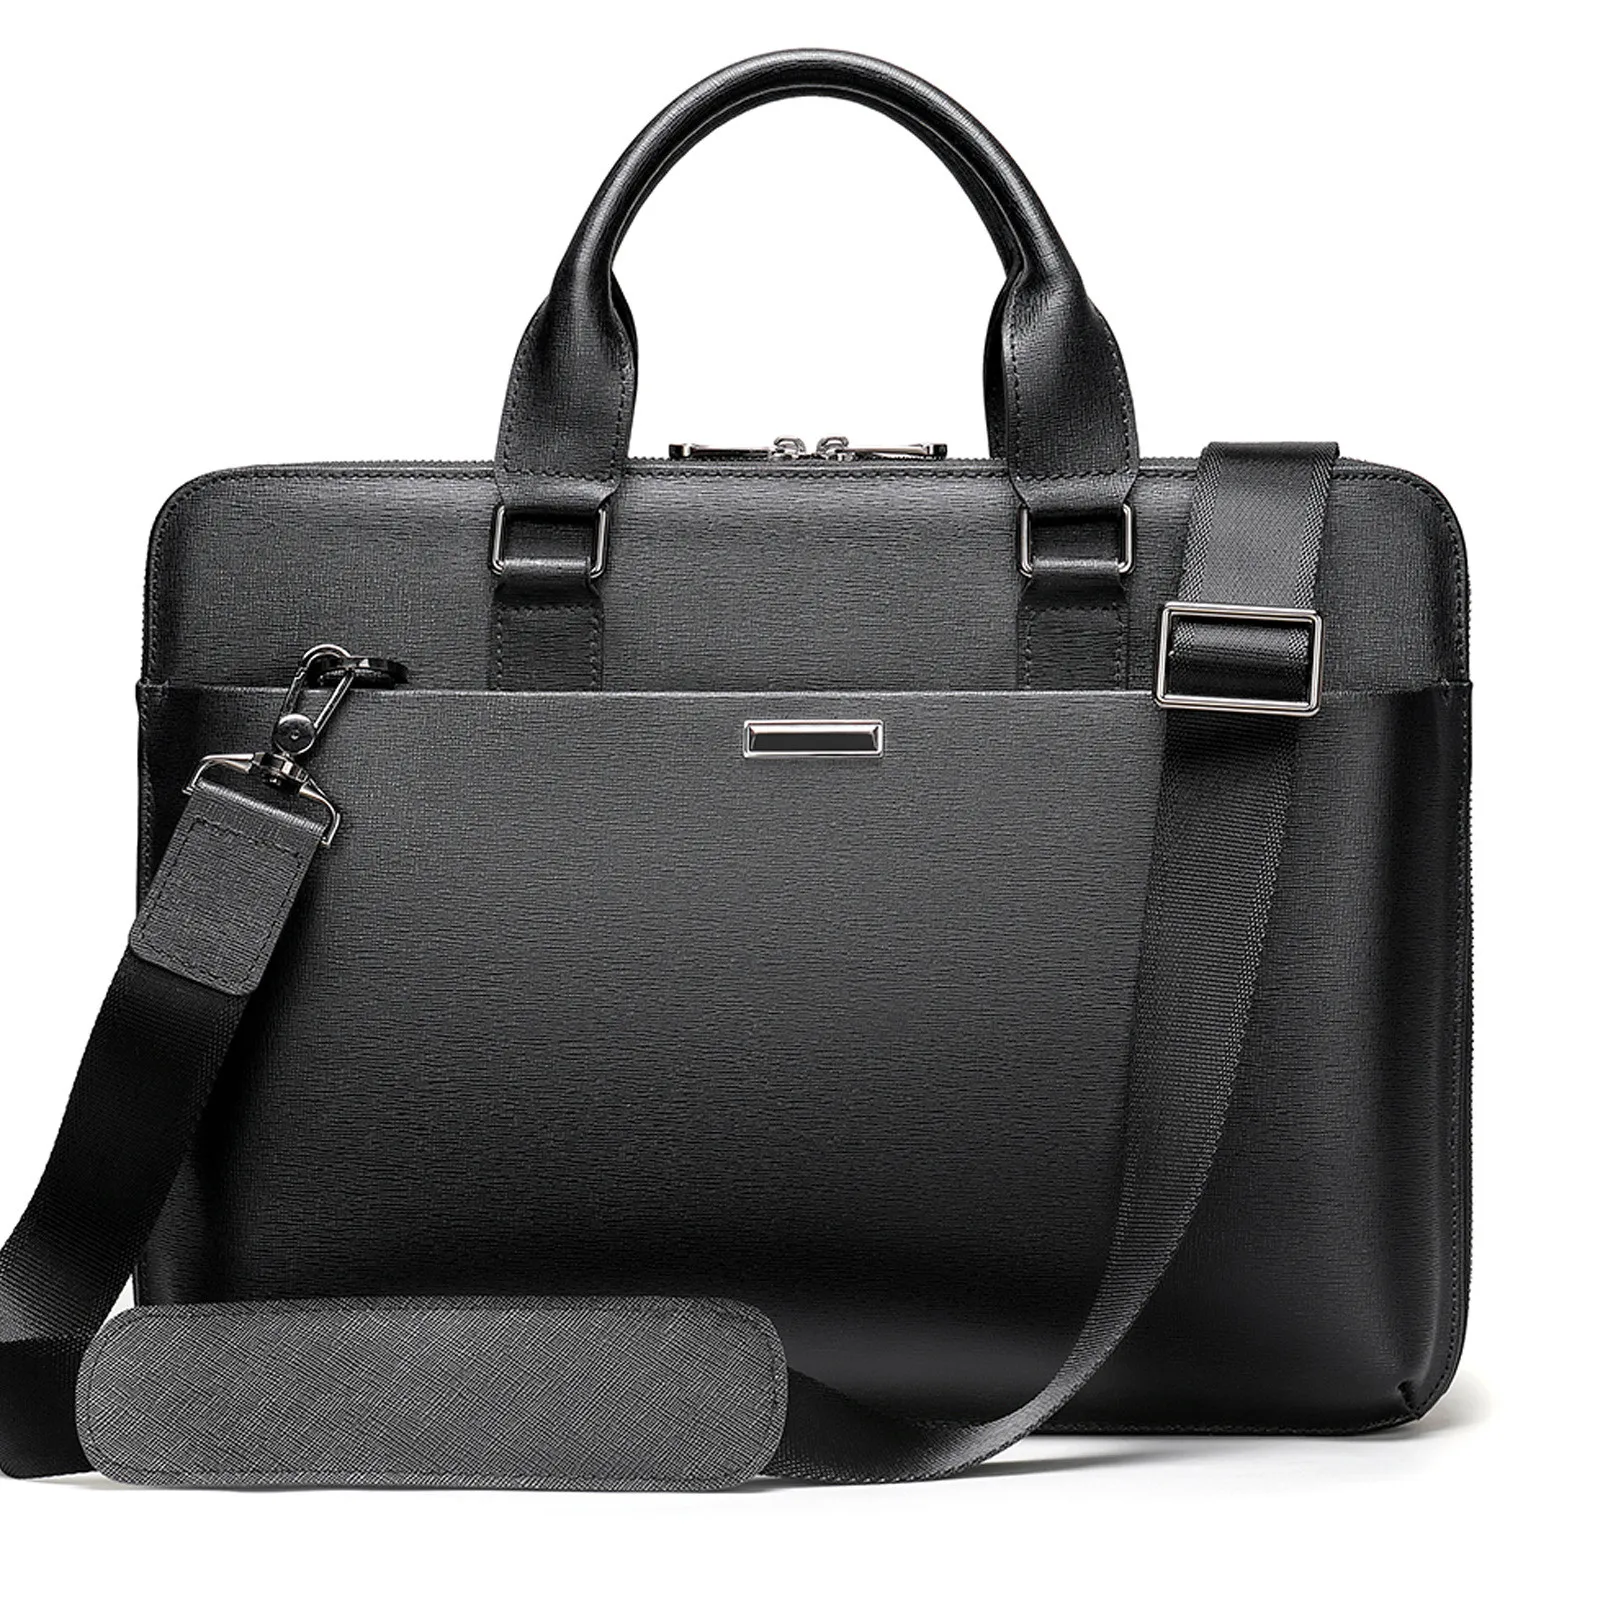 Mens Fashion Genuine Leather Briefcase High Quality Business Office Laptop Bag Handbag For 13.3" Laptop Man Shoulder Bag